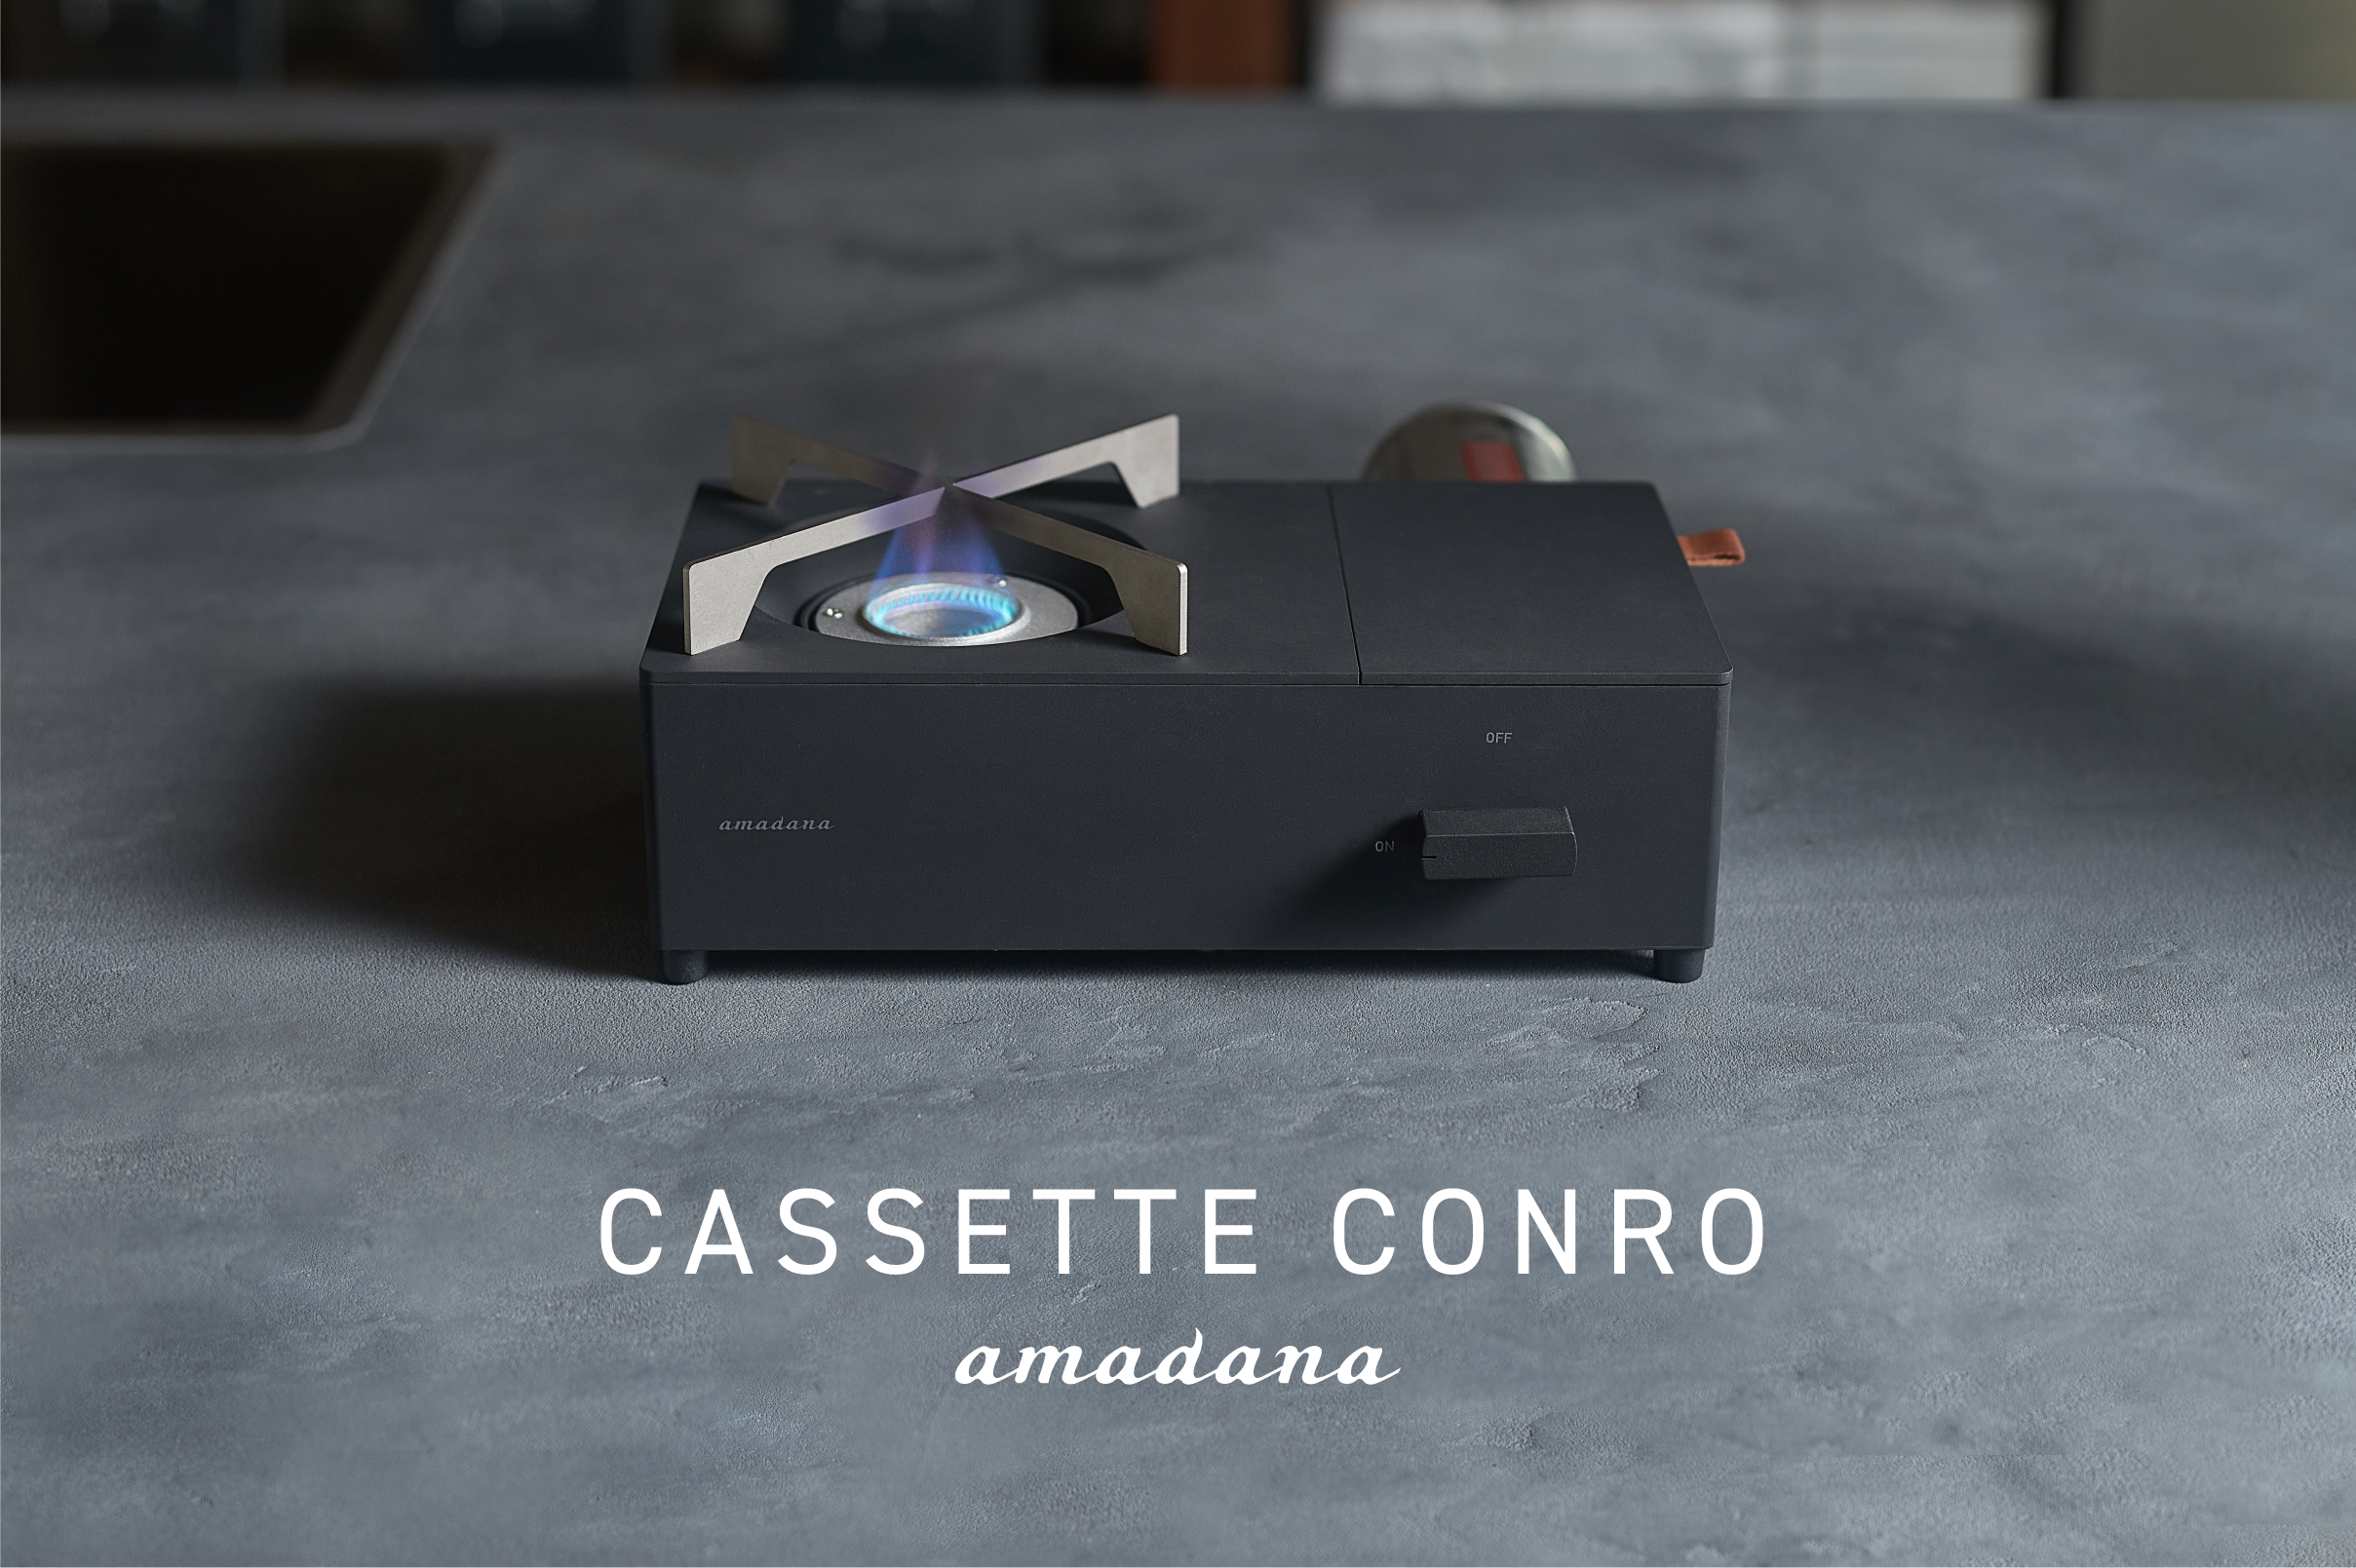 フルアルミダイキャストボディの小型カセットコンロ。amadanaから発表